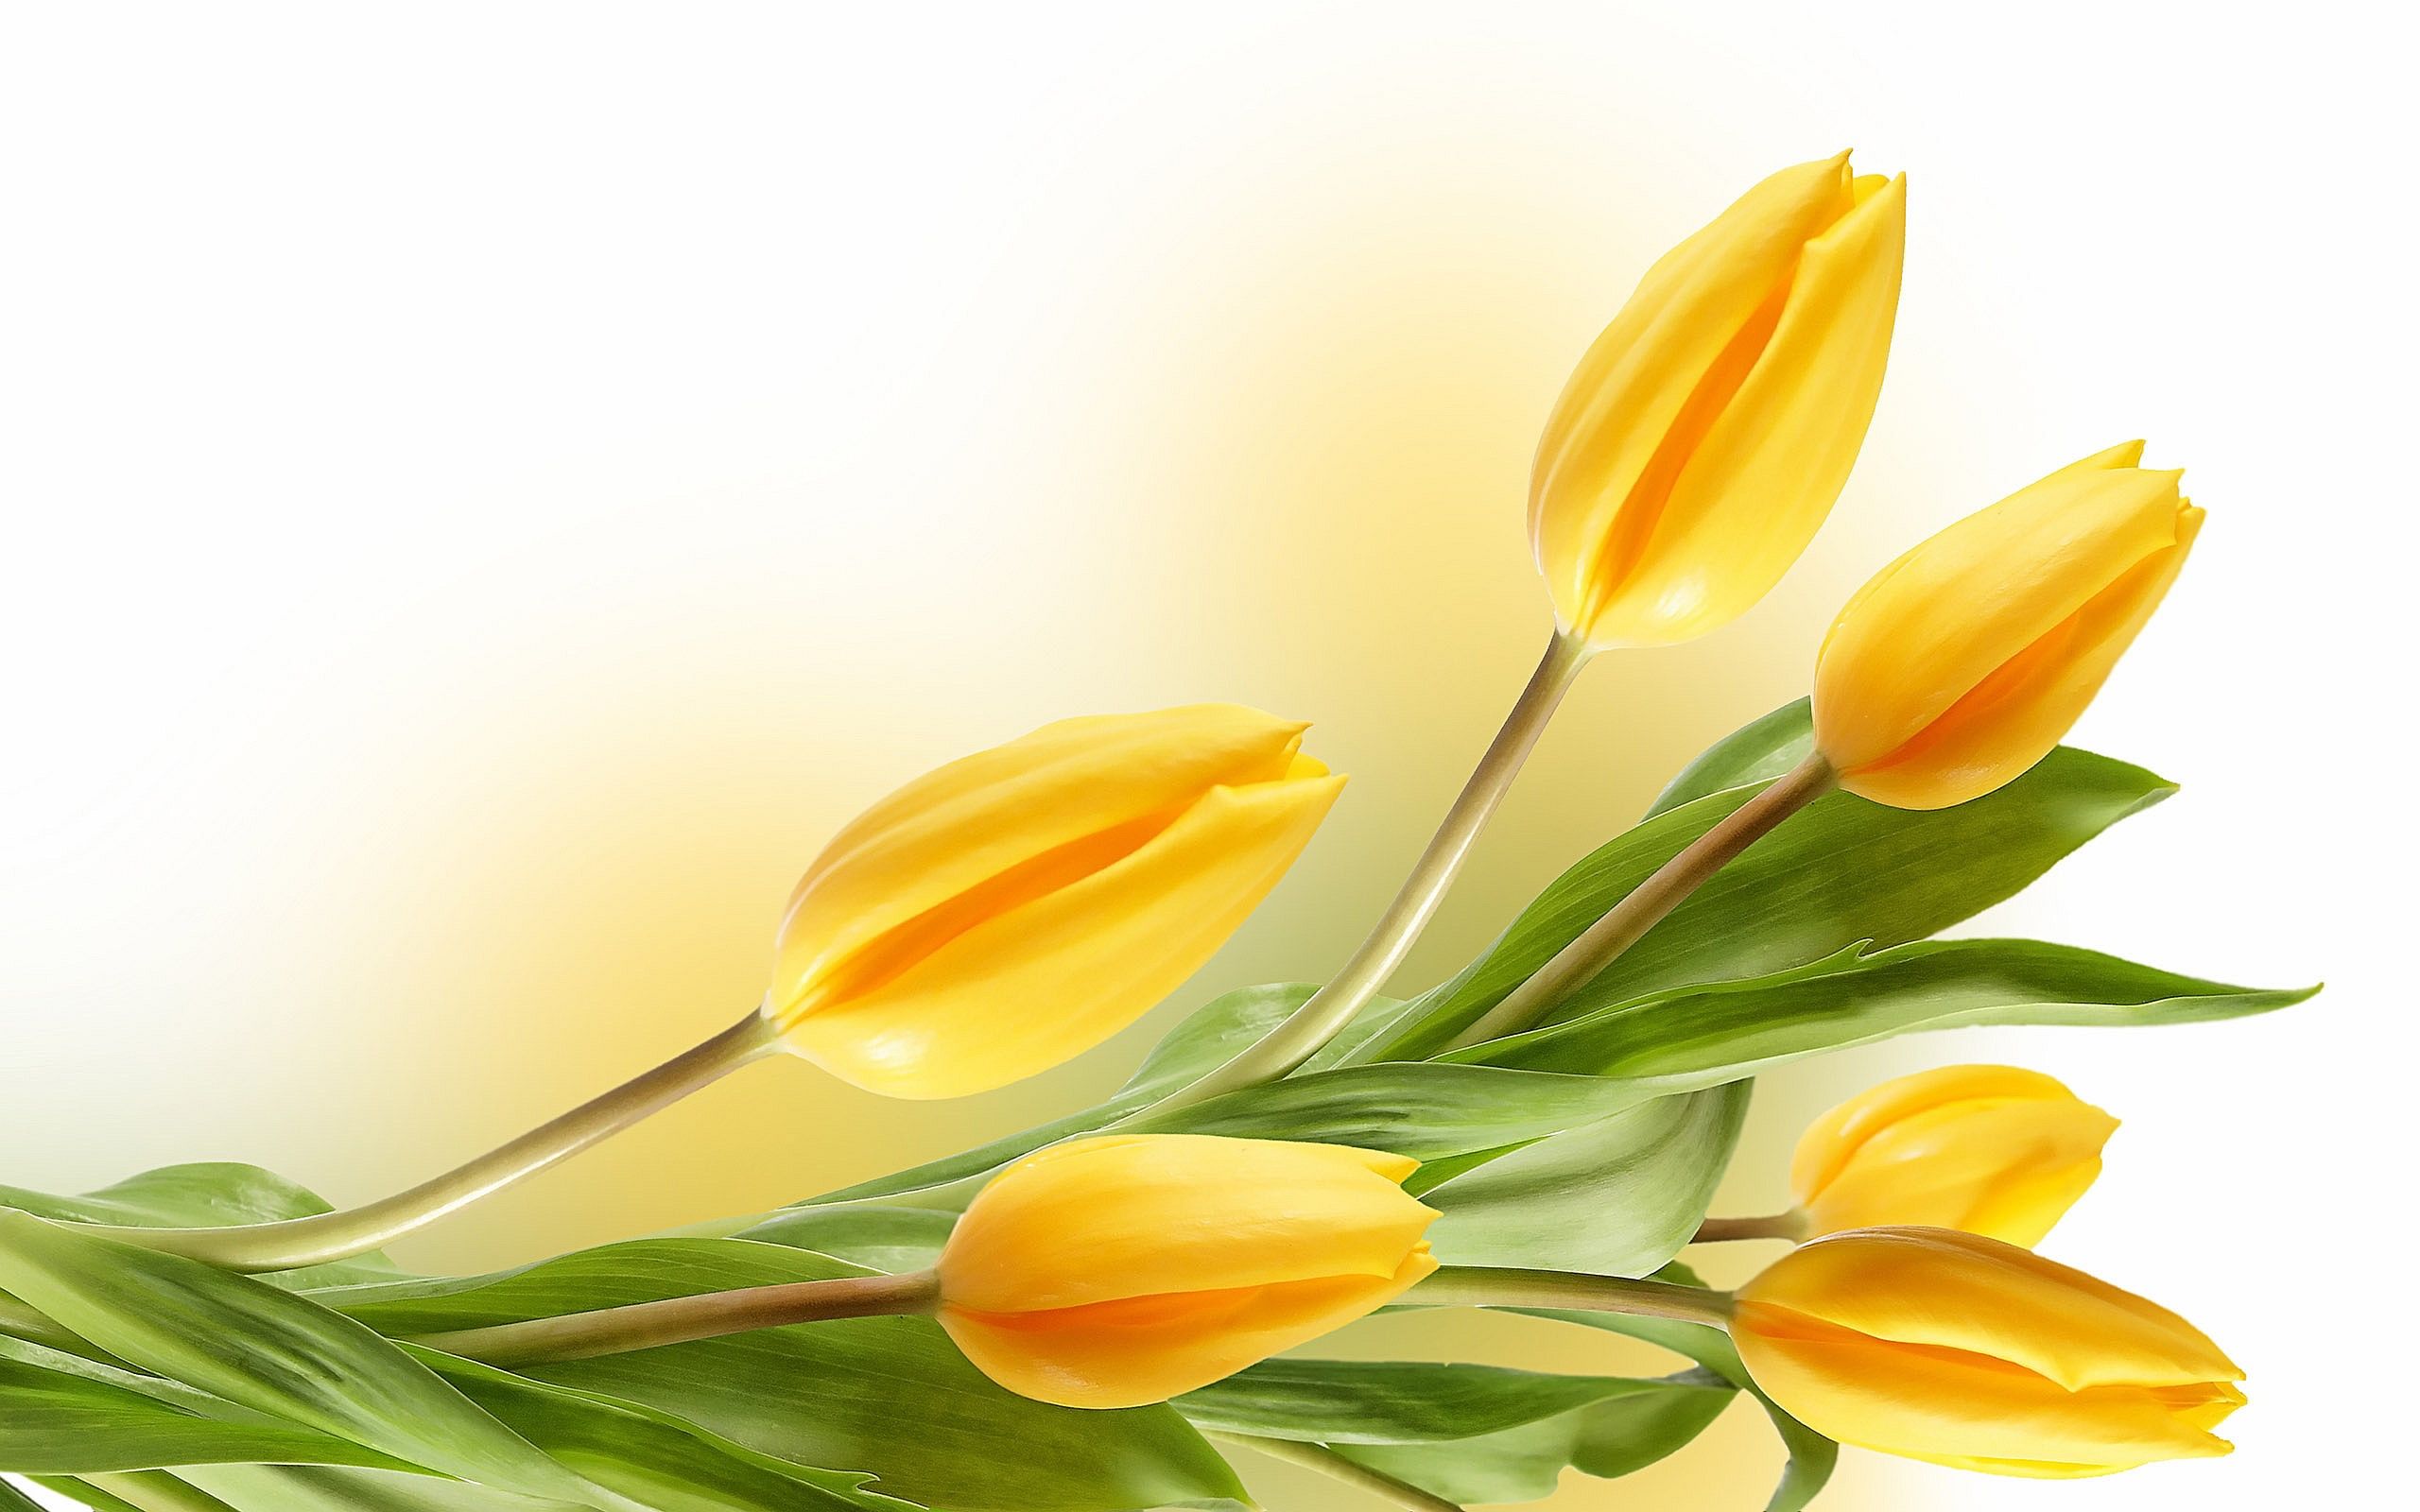 Yellow Tulips Wallpaper